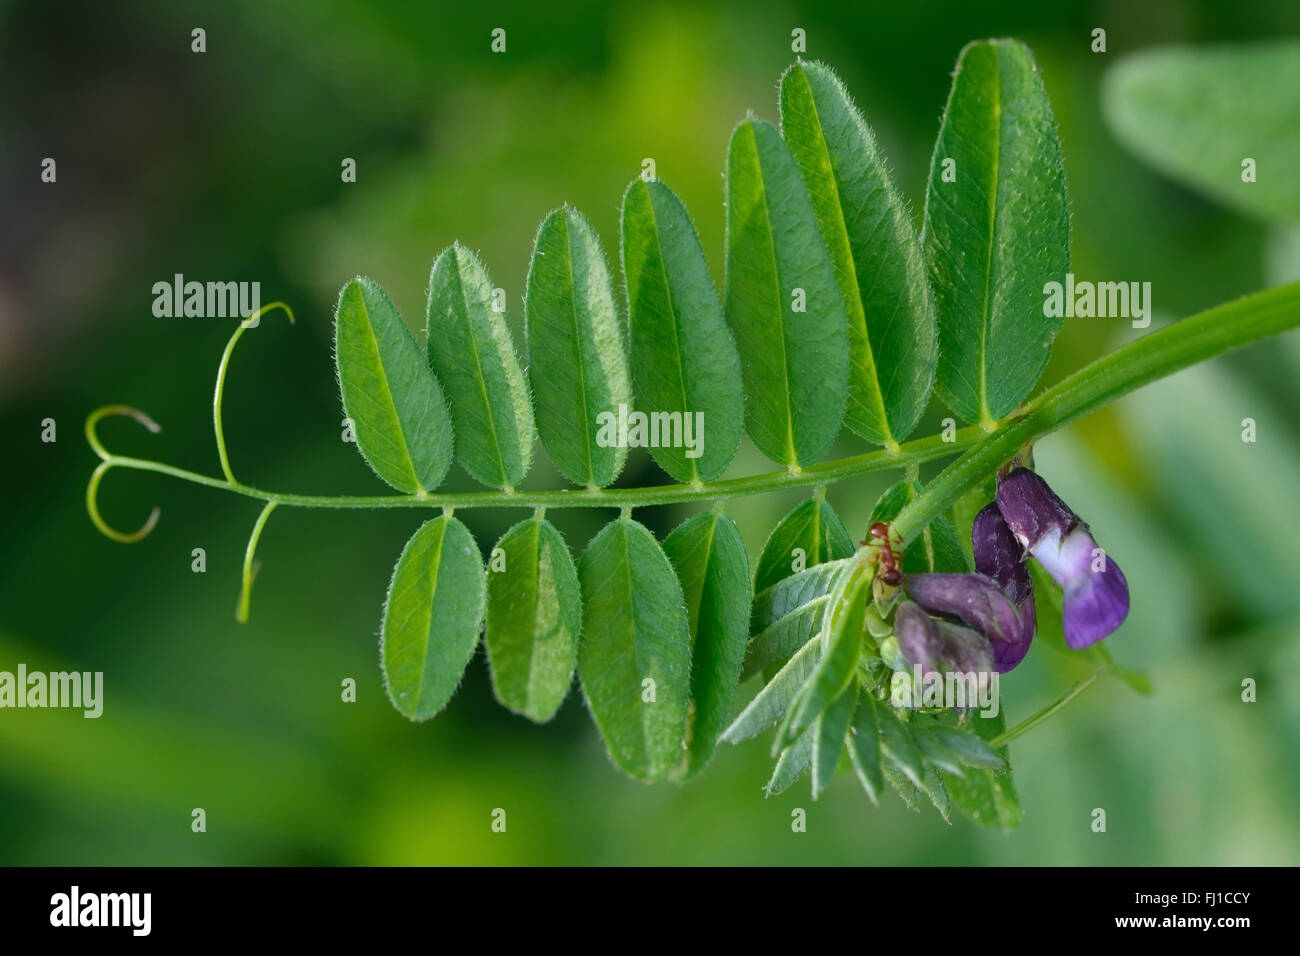 La vesce (Vicia sepium Bush). Un membre de la pourpre famille des pois (Fabaceae), vu ici en fleur dans une prairie britannique Banque D'Images